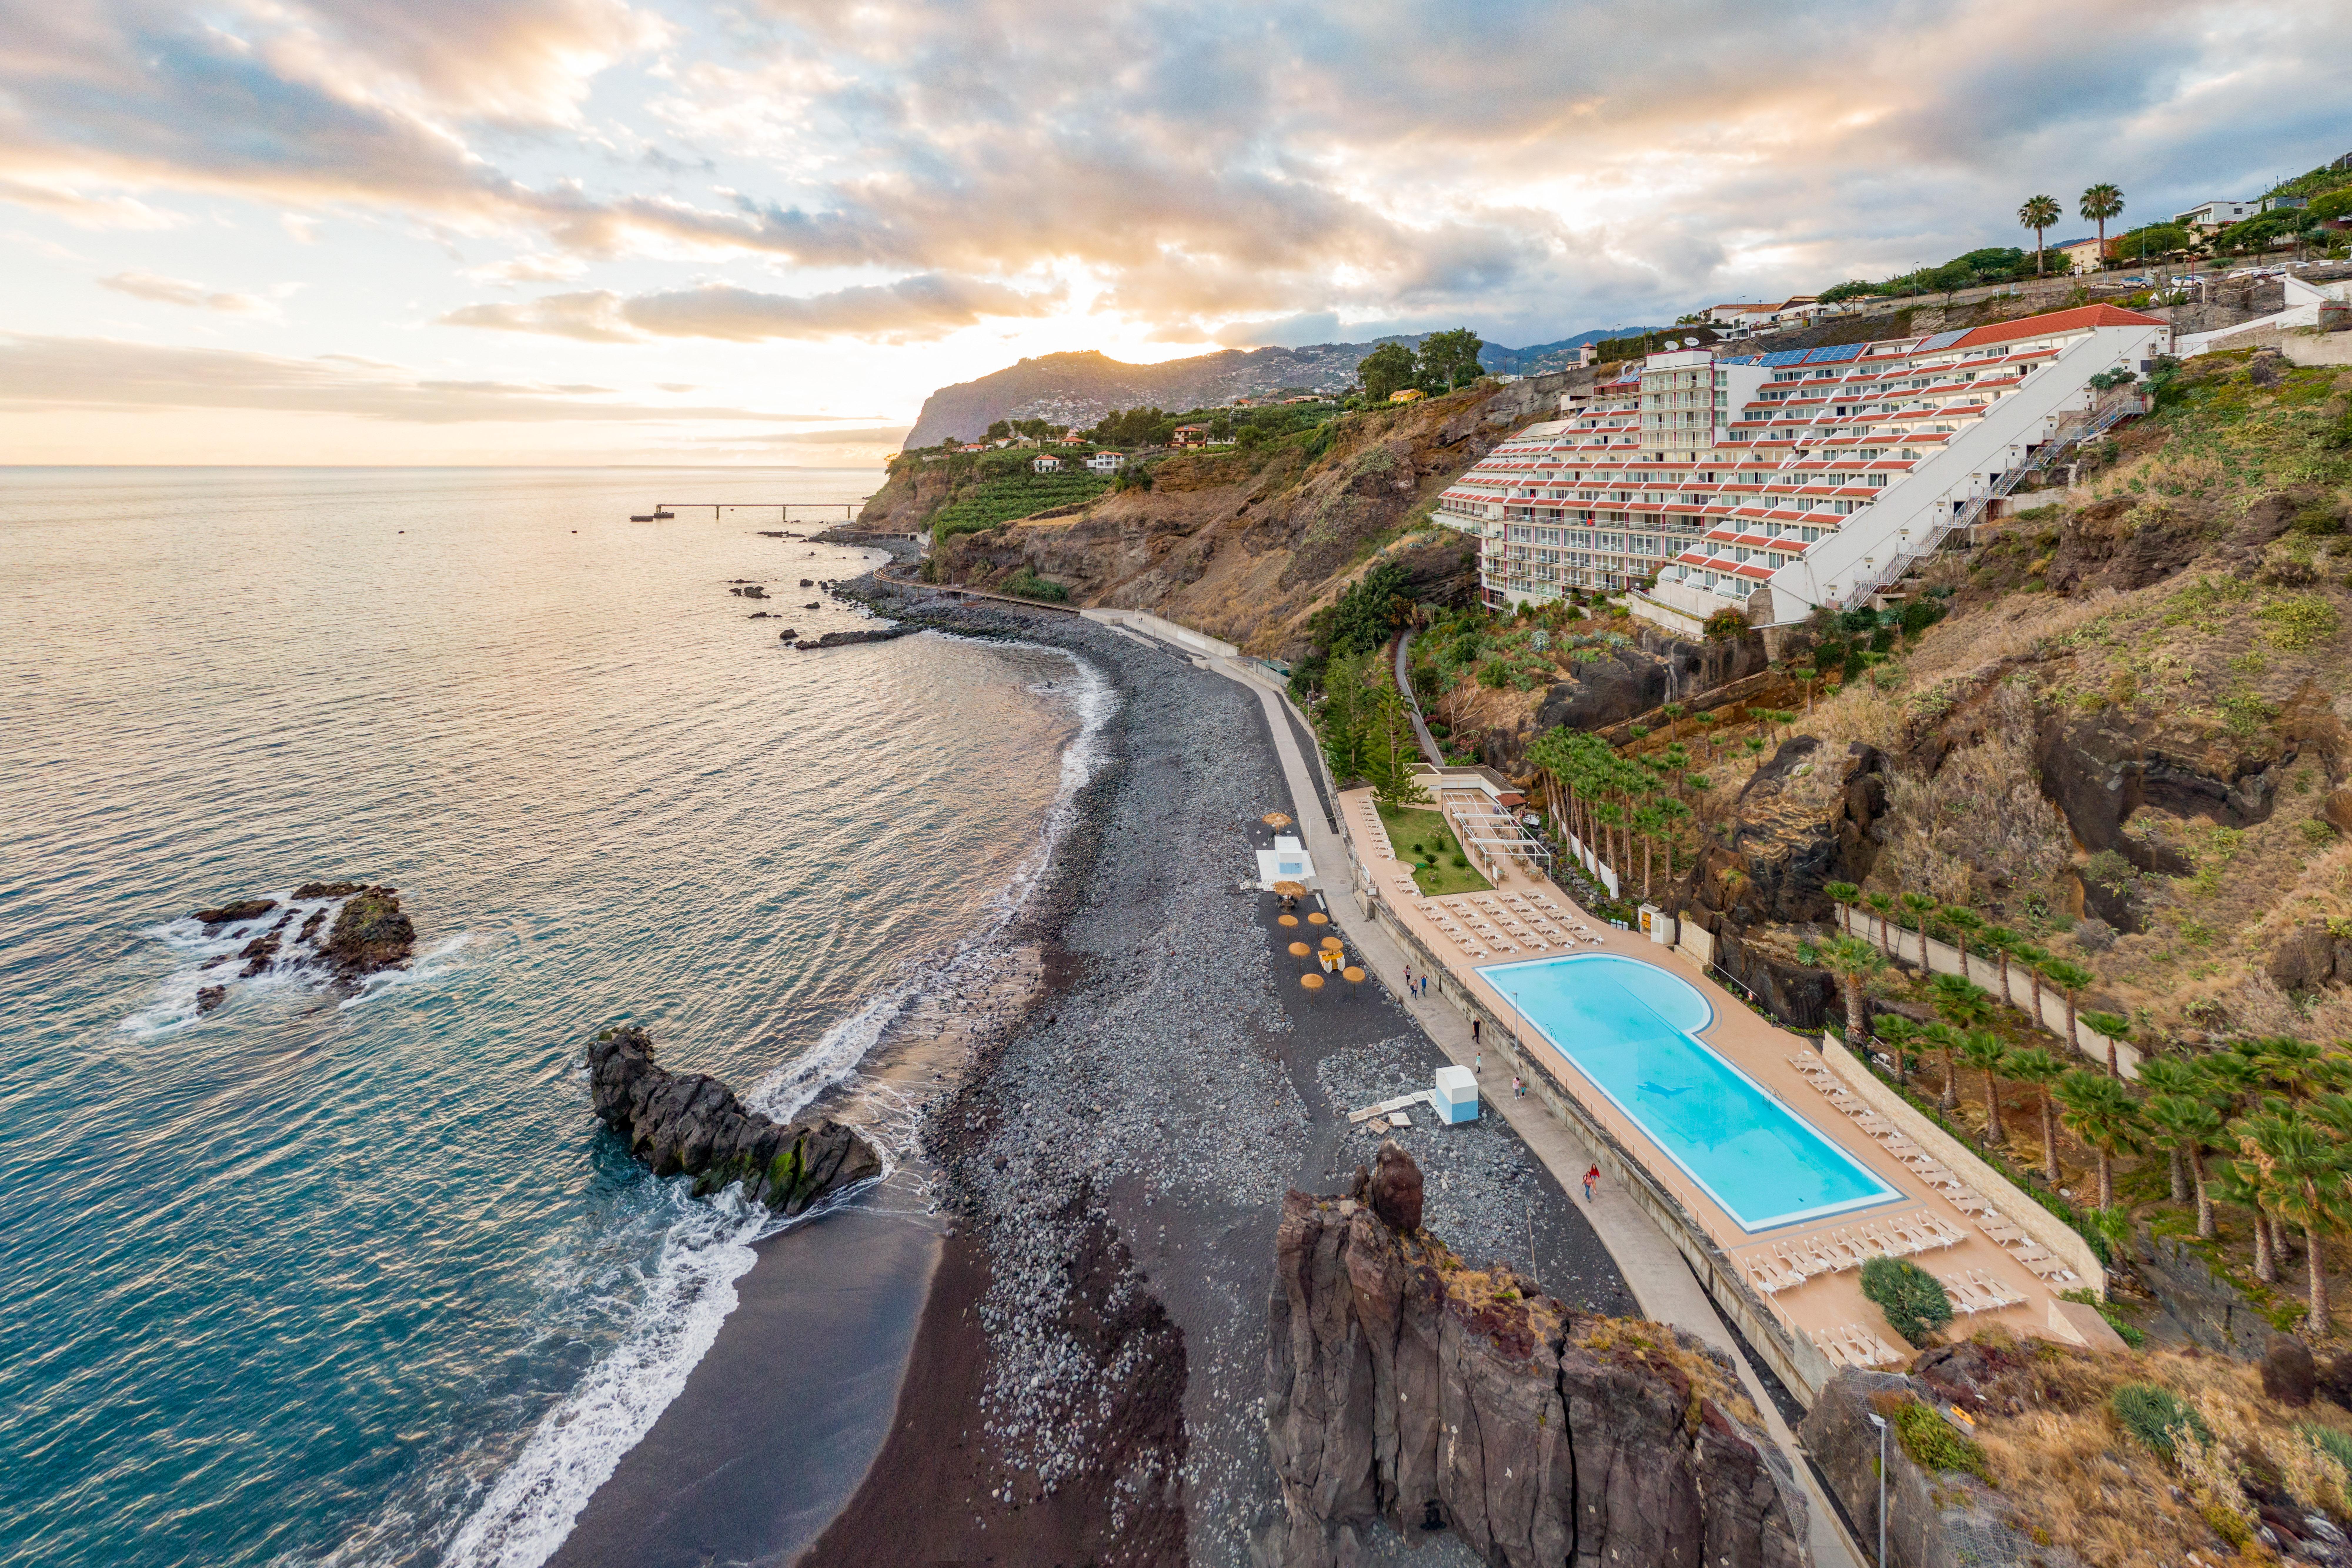 Hotel Orca Praia Funchal  Exterior photo